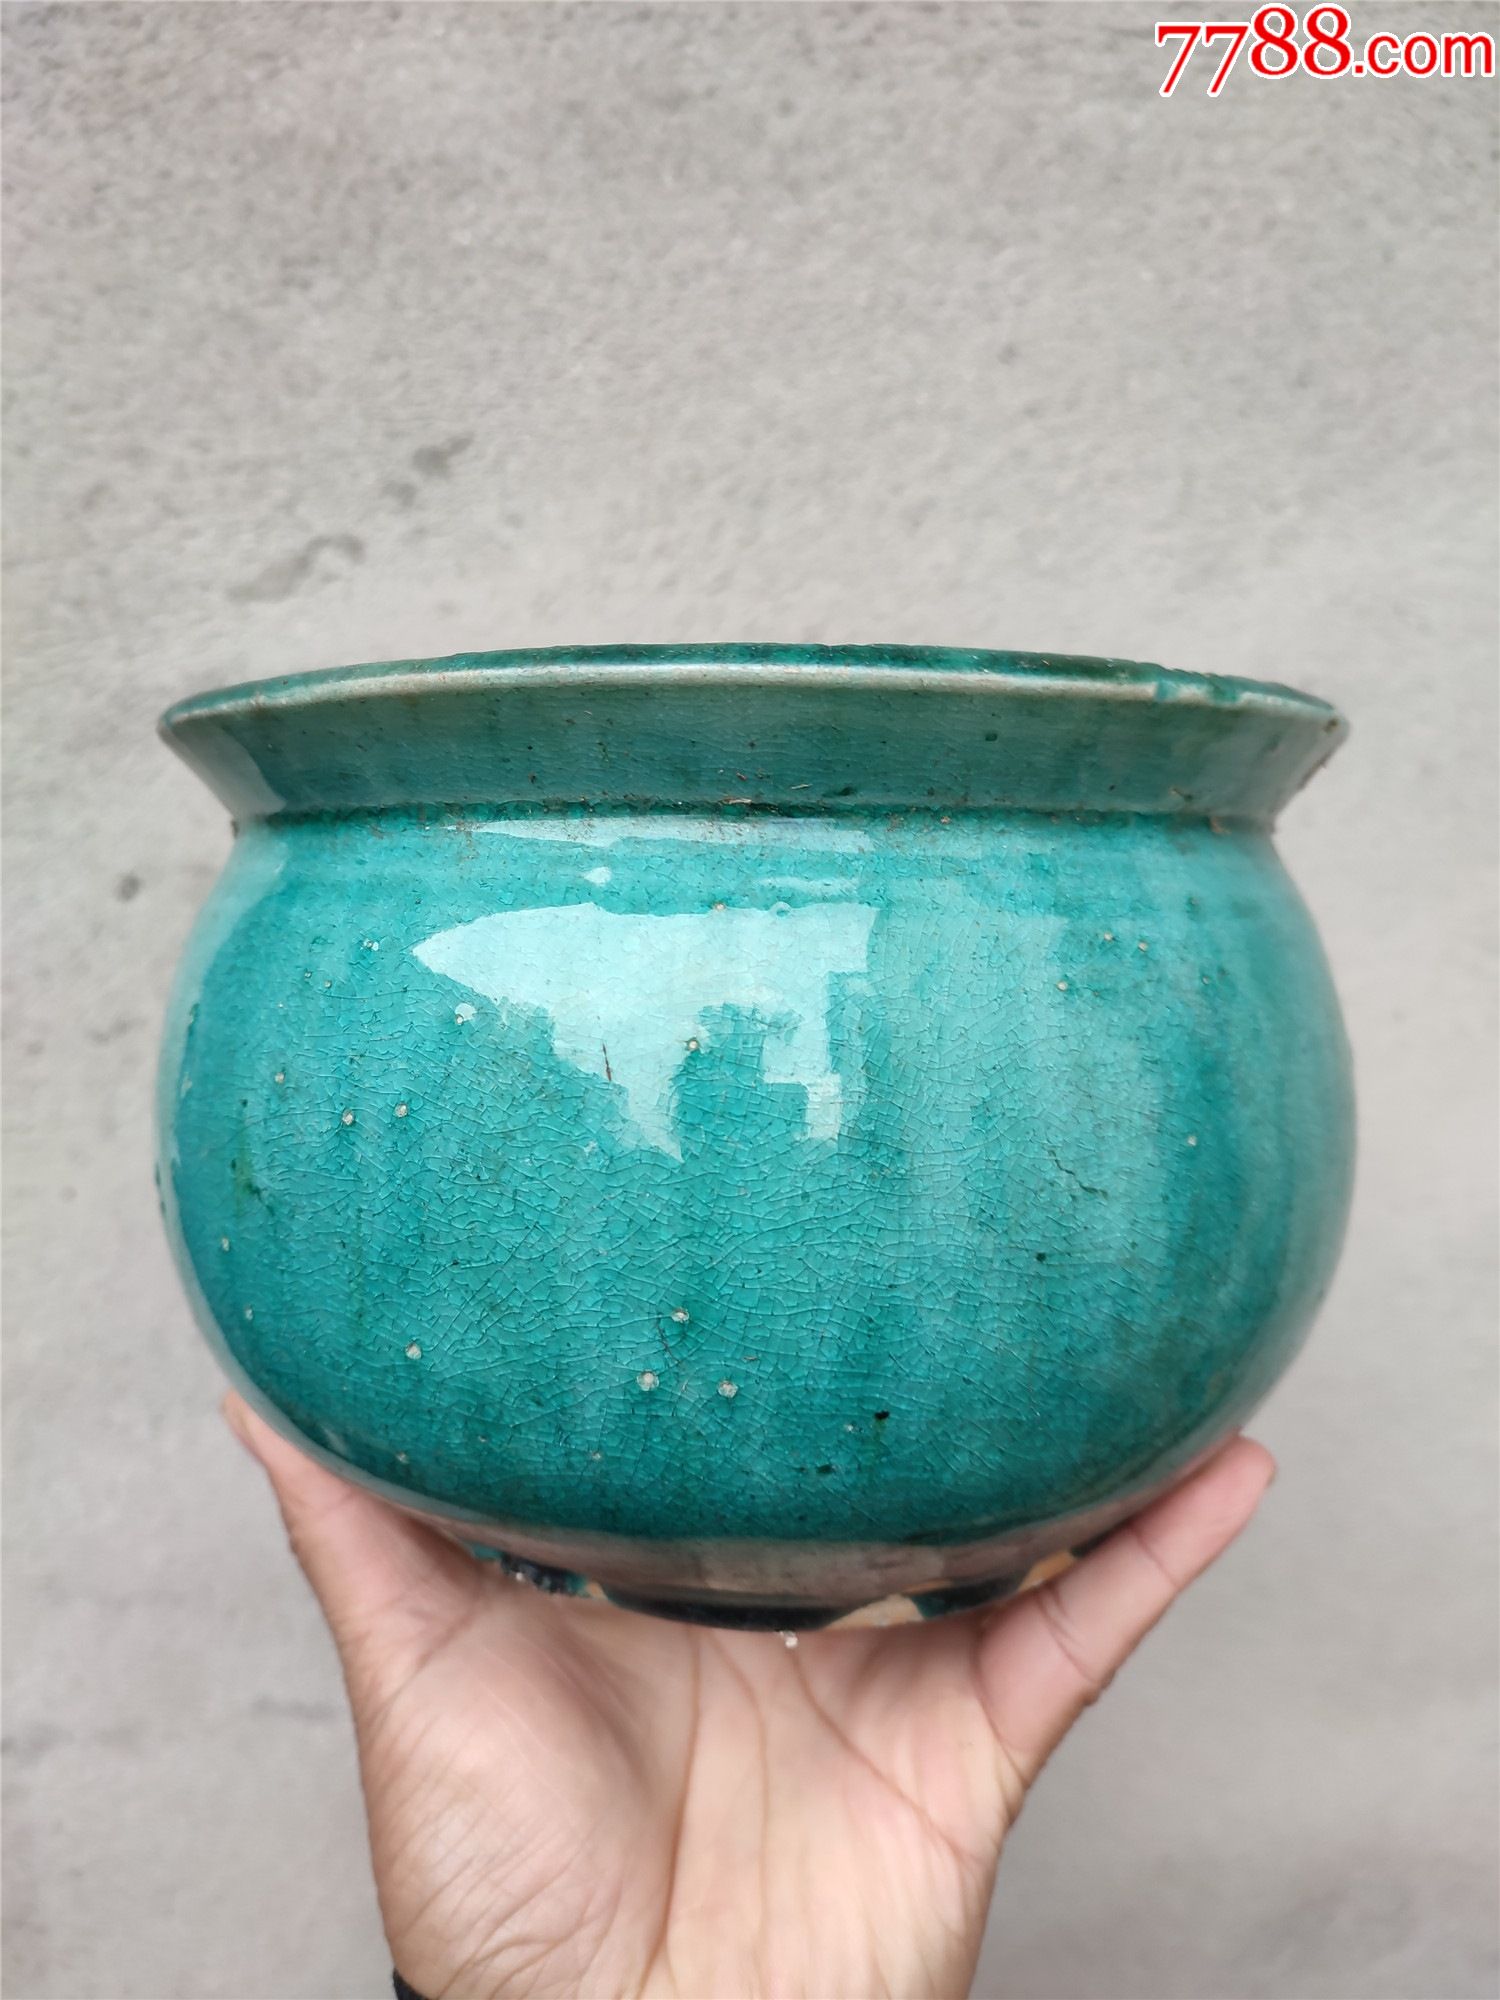 绿釉陶器罐子,高13厘米,直径19厘米,沿口有小磕,底部有冲线如图所示